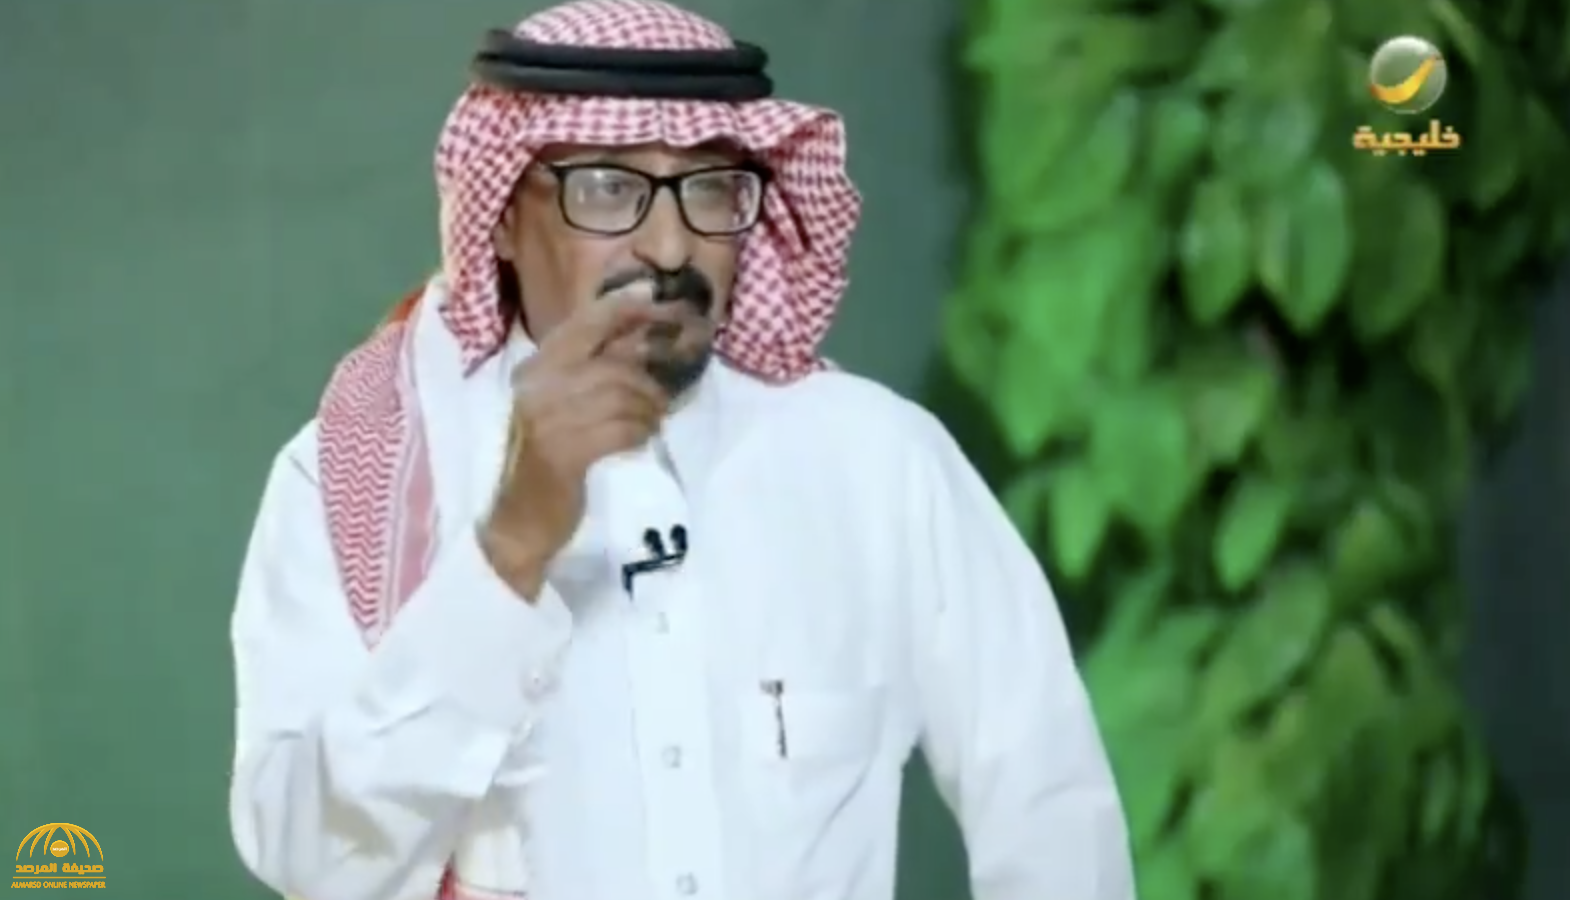 بالفيديو.. شاعر سعودي يكشف قصة بيع سيارته لإرسال ثمنها إلى فنان مصري لا يعرفه!